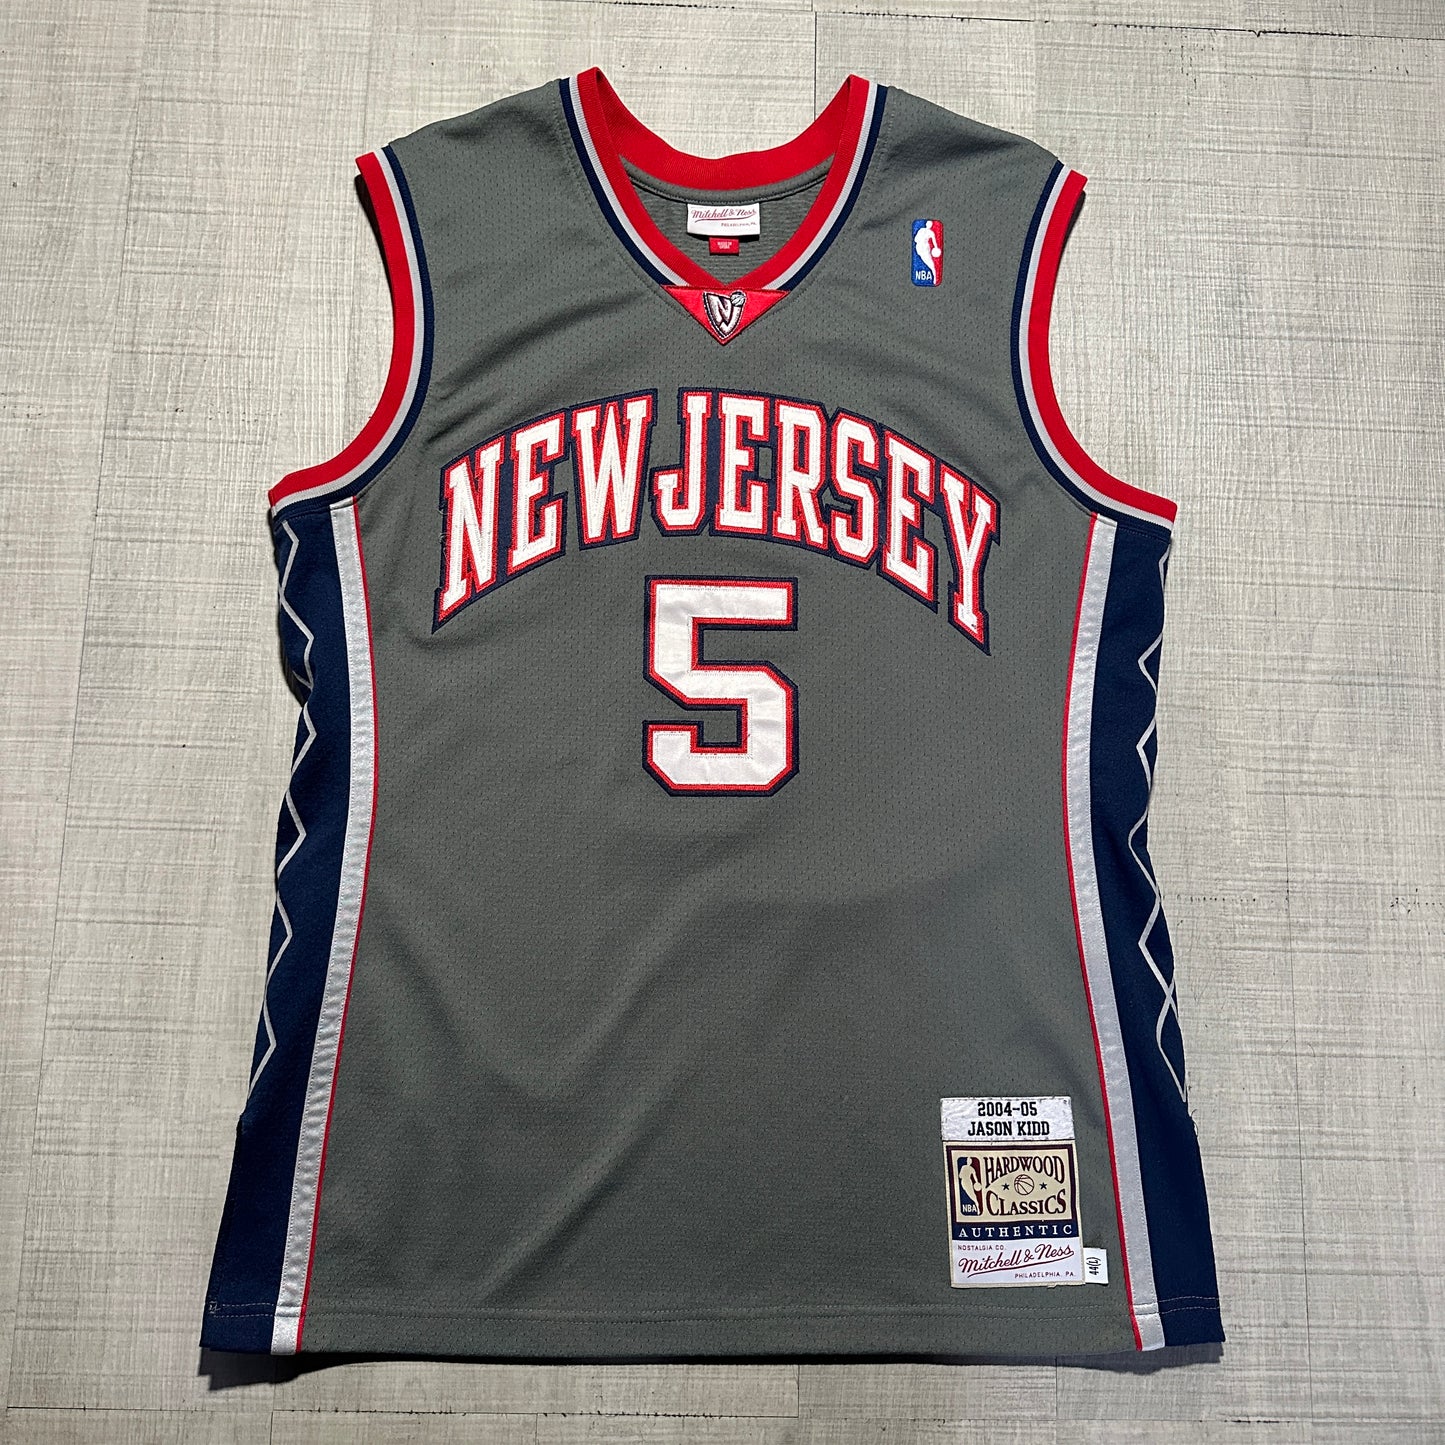 Jason Kidd New Jersey Nets 04-05 Authentic Mitchell & Ness Jersey